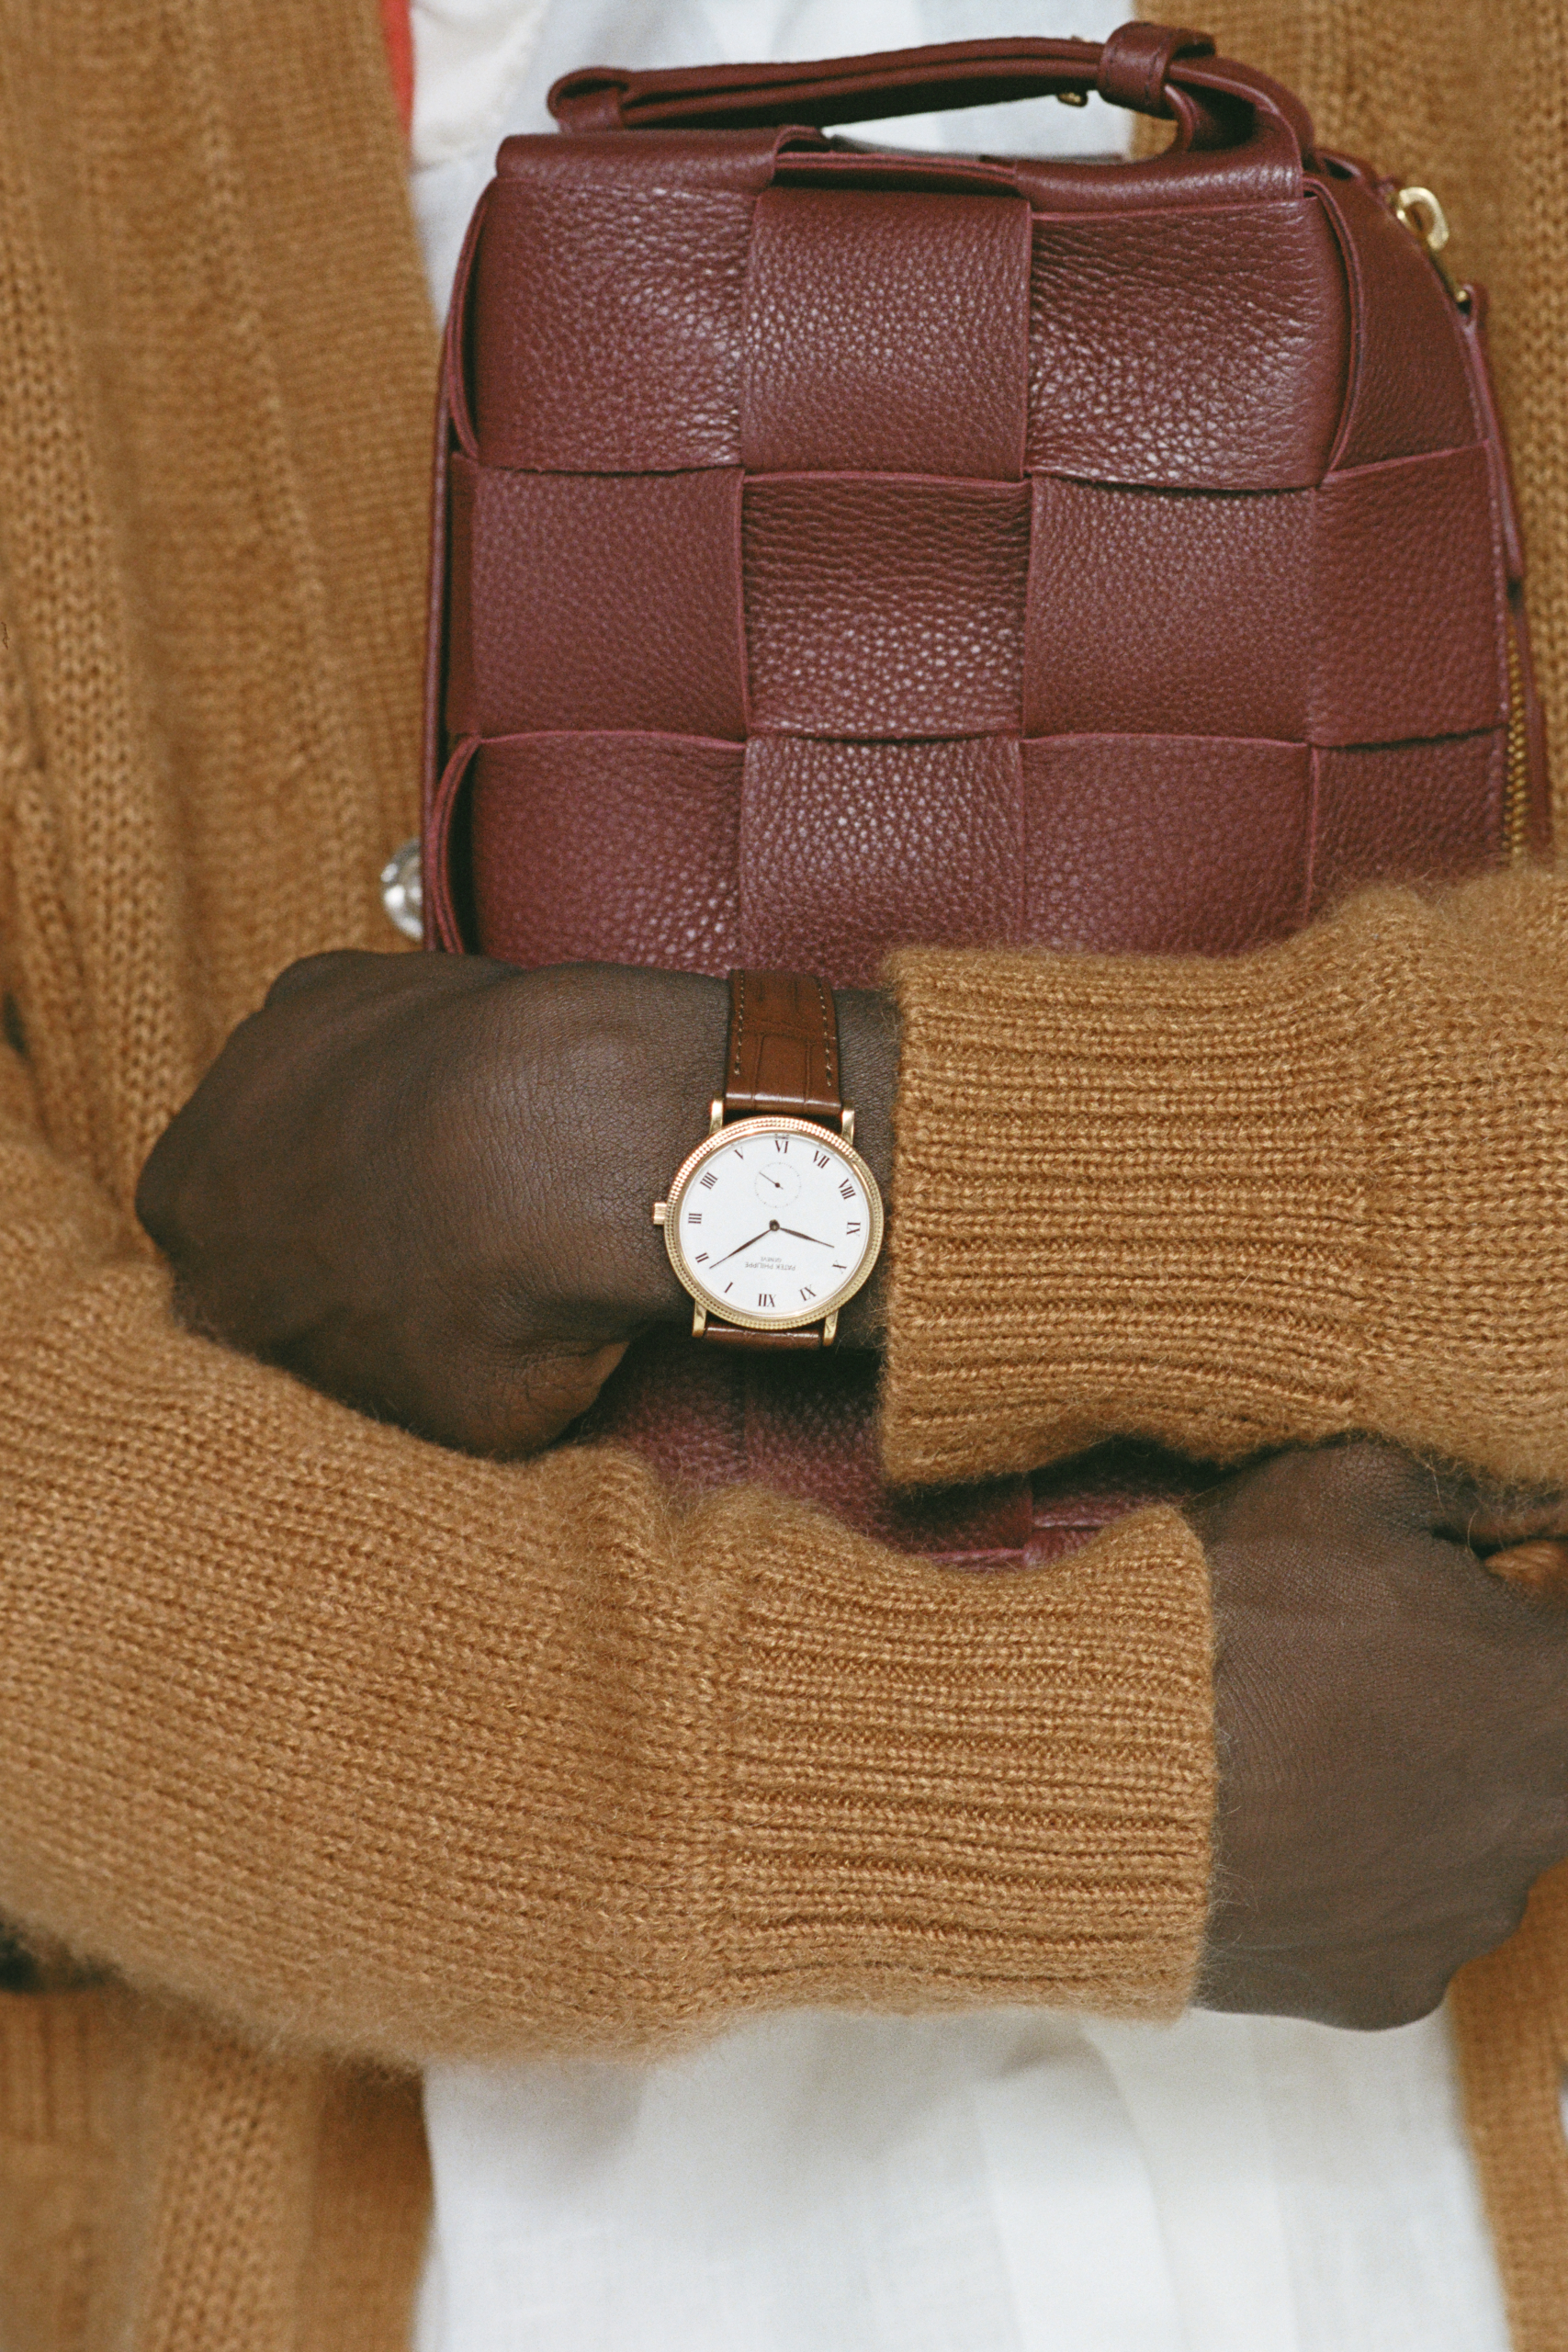 Pre-owned Patek Philippe Leather Weekend Bag In Brown